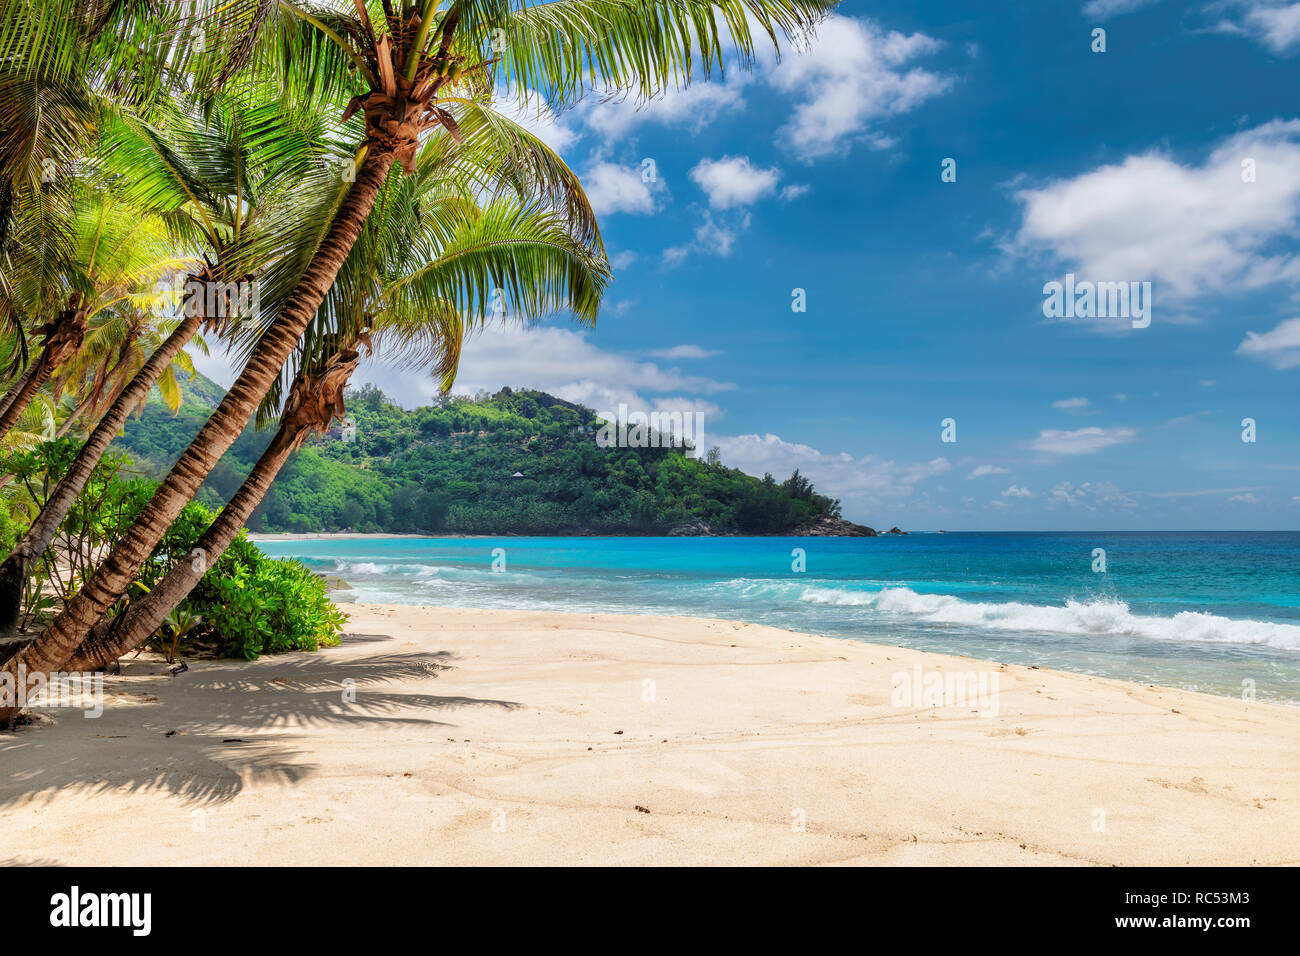 Spiaggia di sabbia con palme e mare turchese in isola dei Caraibi. Foto Stock